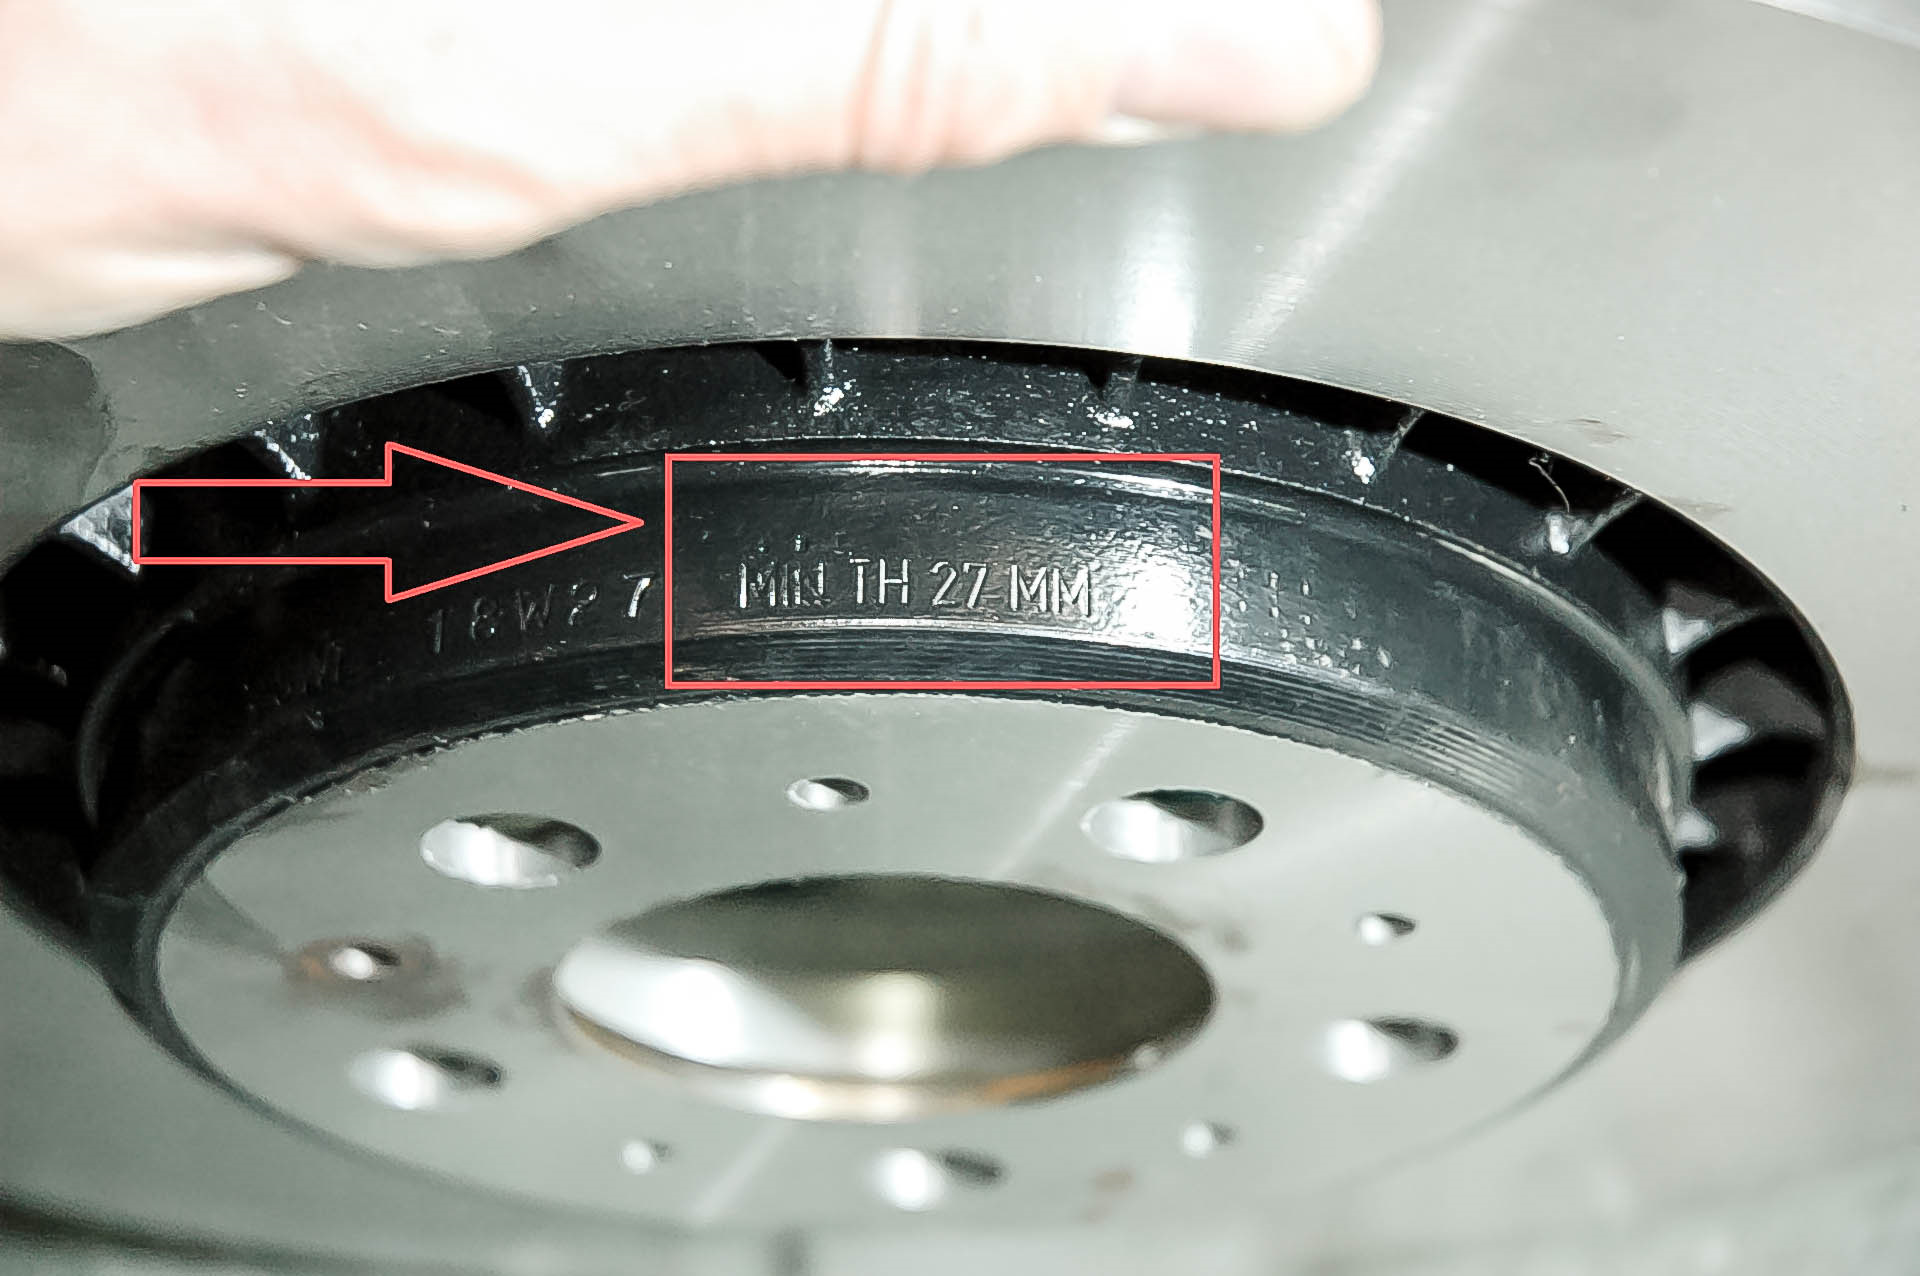 Диски по vin. Как определить диаметр тормозного диска Volvo xc90. Минимальная толщина тормозного диска Вольво хс90. Тормозные диски Вольво хс90. Тормозной диск 371мм Volvo.